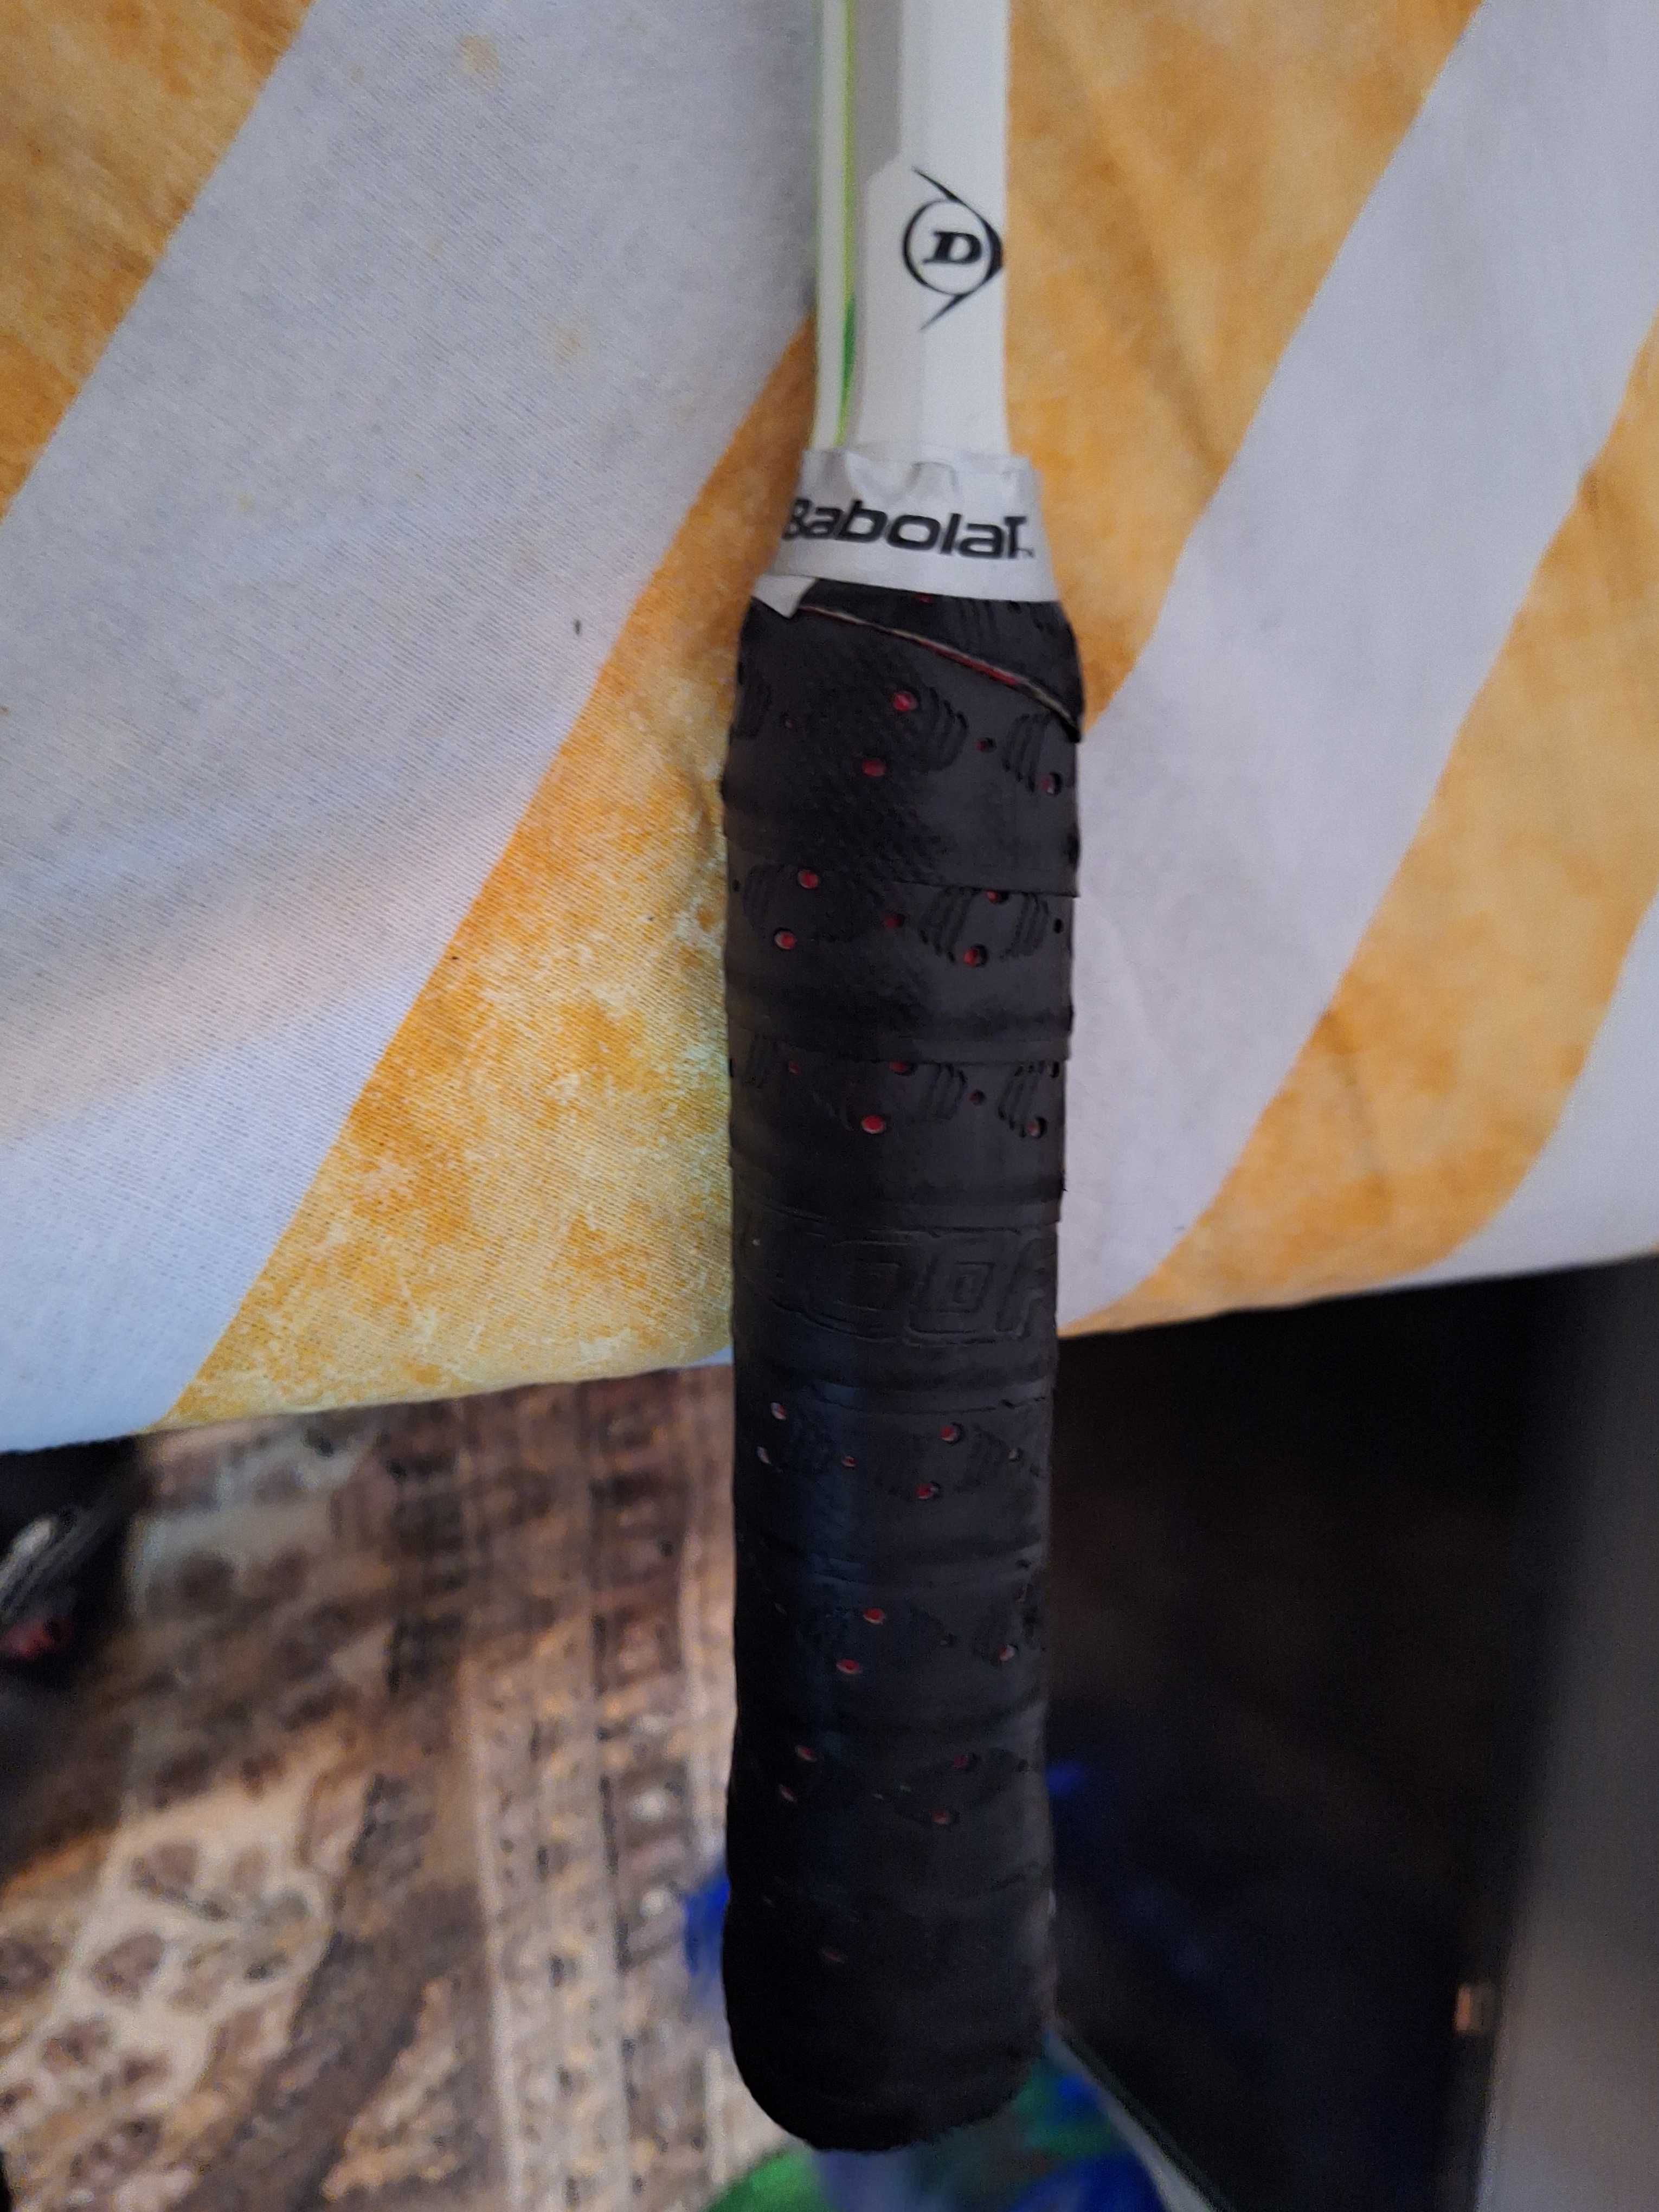 Dunlop Apex carbon racheta squash